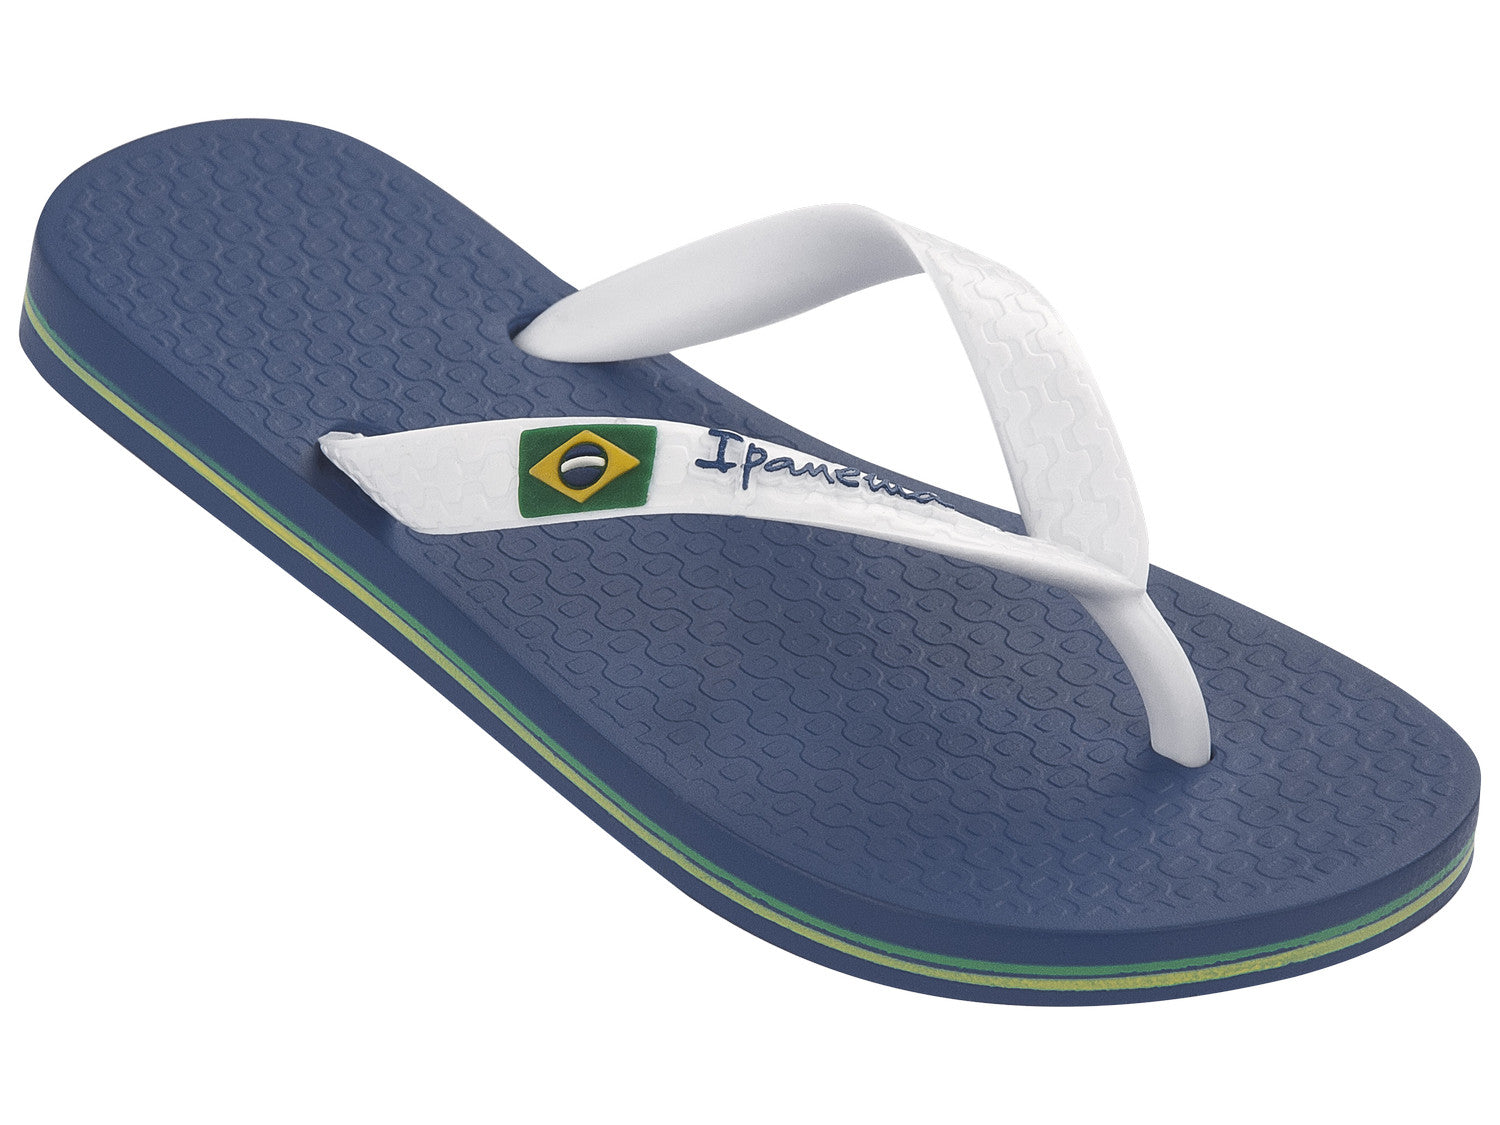 Dapper Ik was verrast Ontrouw Ipanema - slippers voor jongens -Classic Brasil - blauw en wit – Odiezon